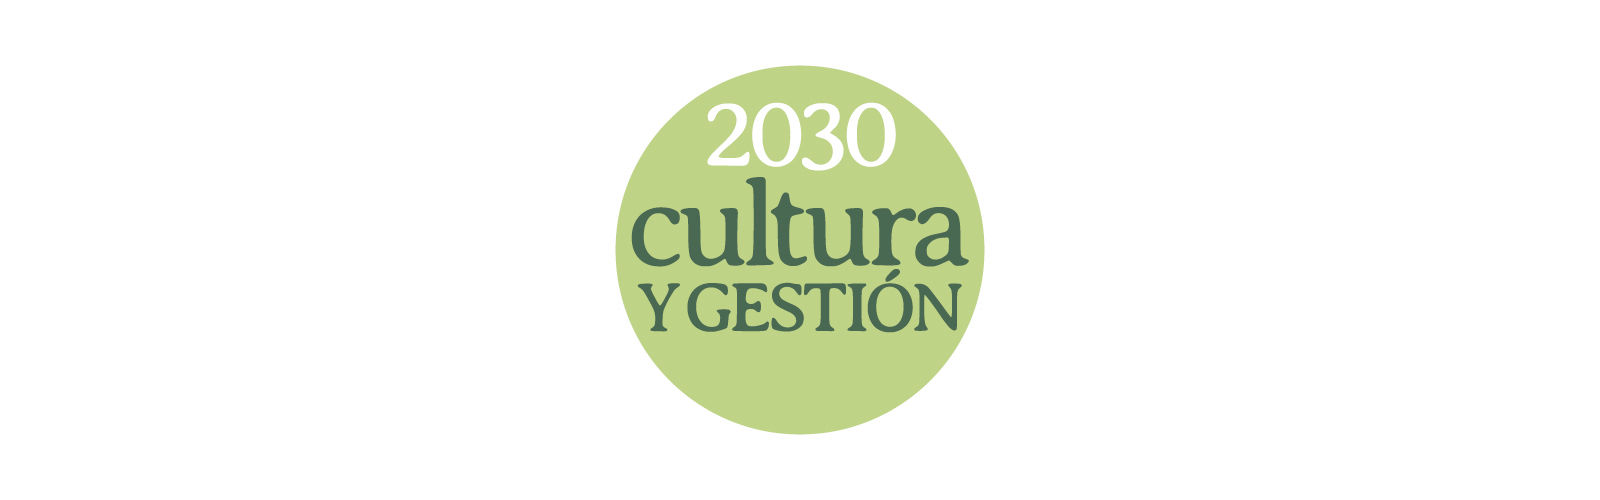 2030 Cultura y Gestión